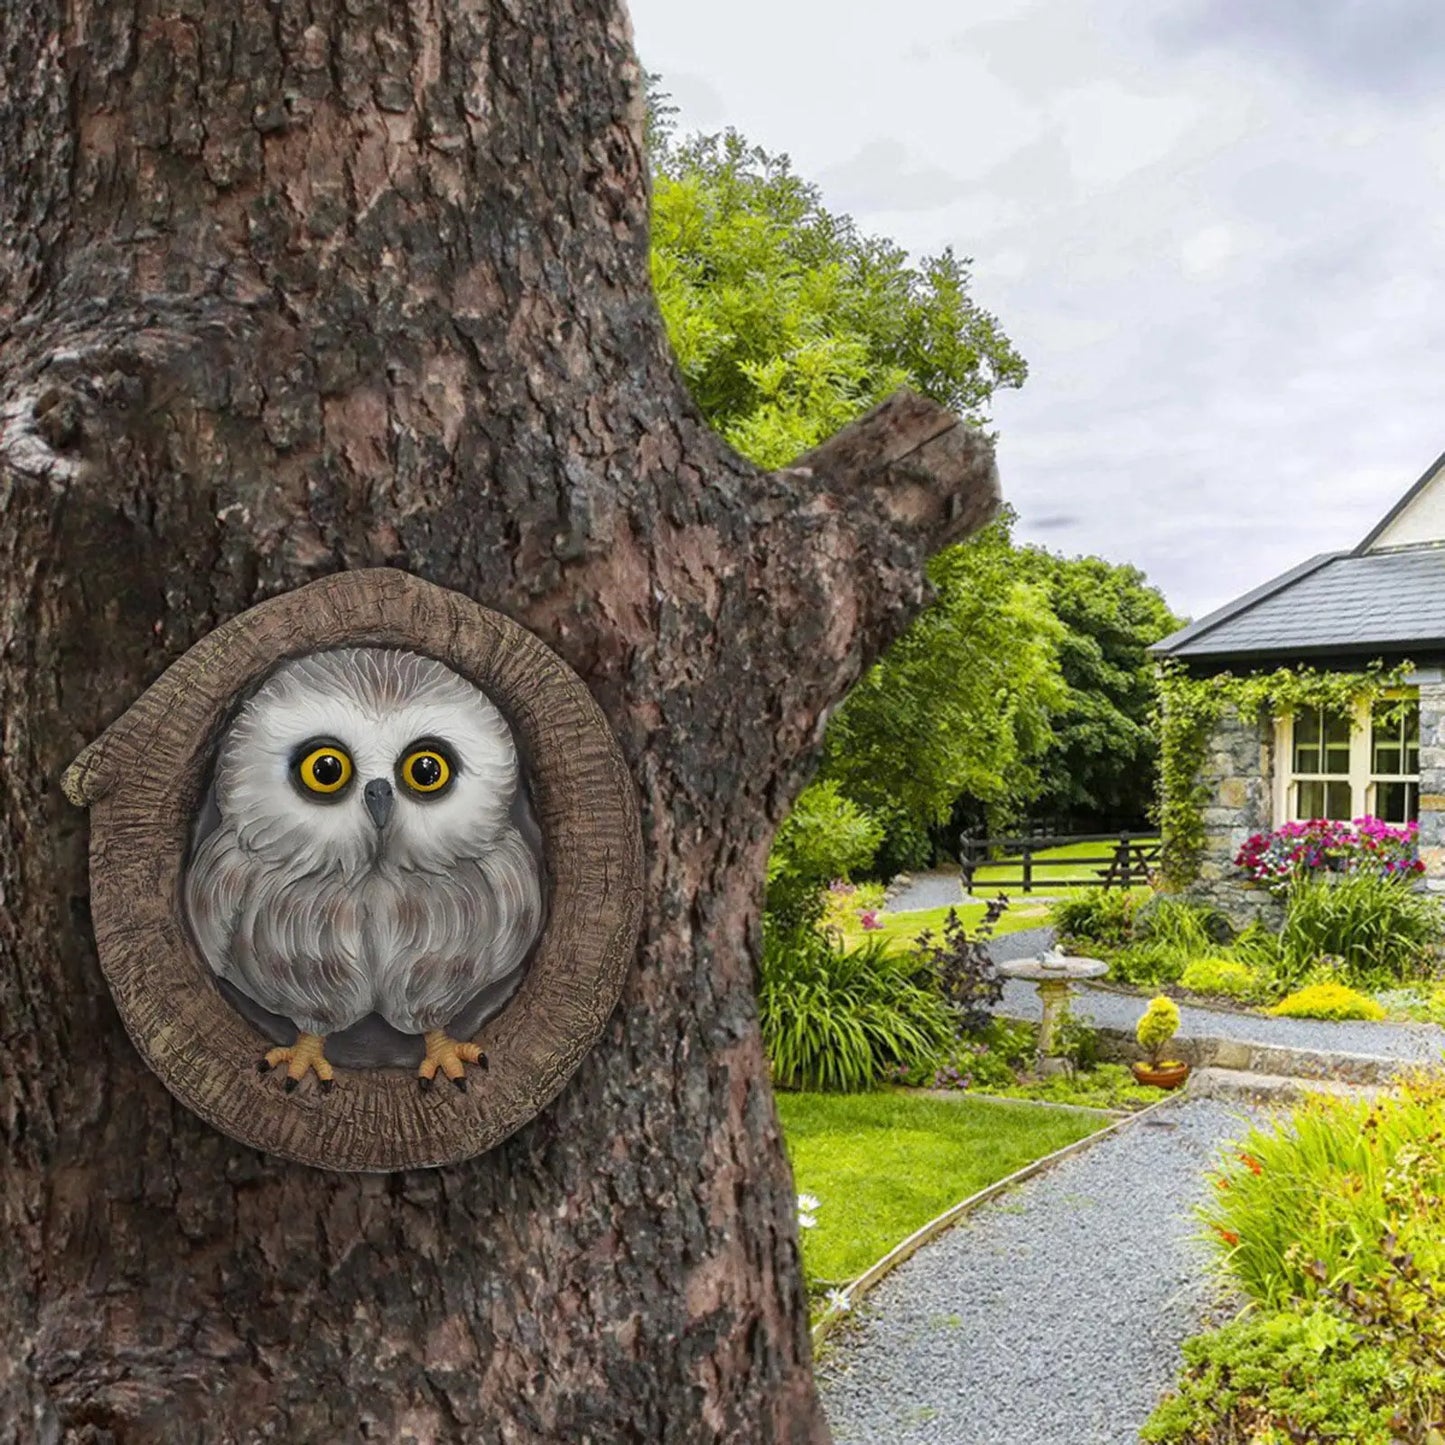 Owl Statue Garden Arbore Decorare pictată manual Artă de grădinărit rezistentă la apă pentru cadouri pentru casă de casă Instalați cu ușurință multifuncțional